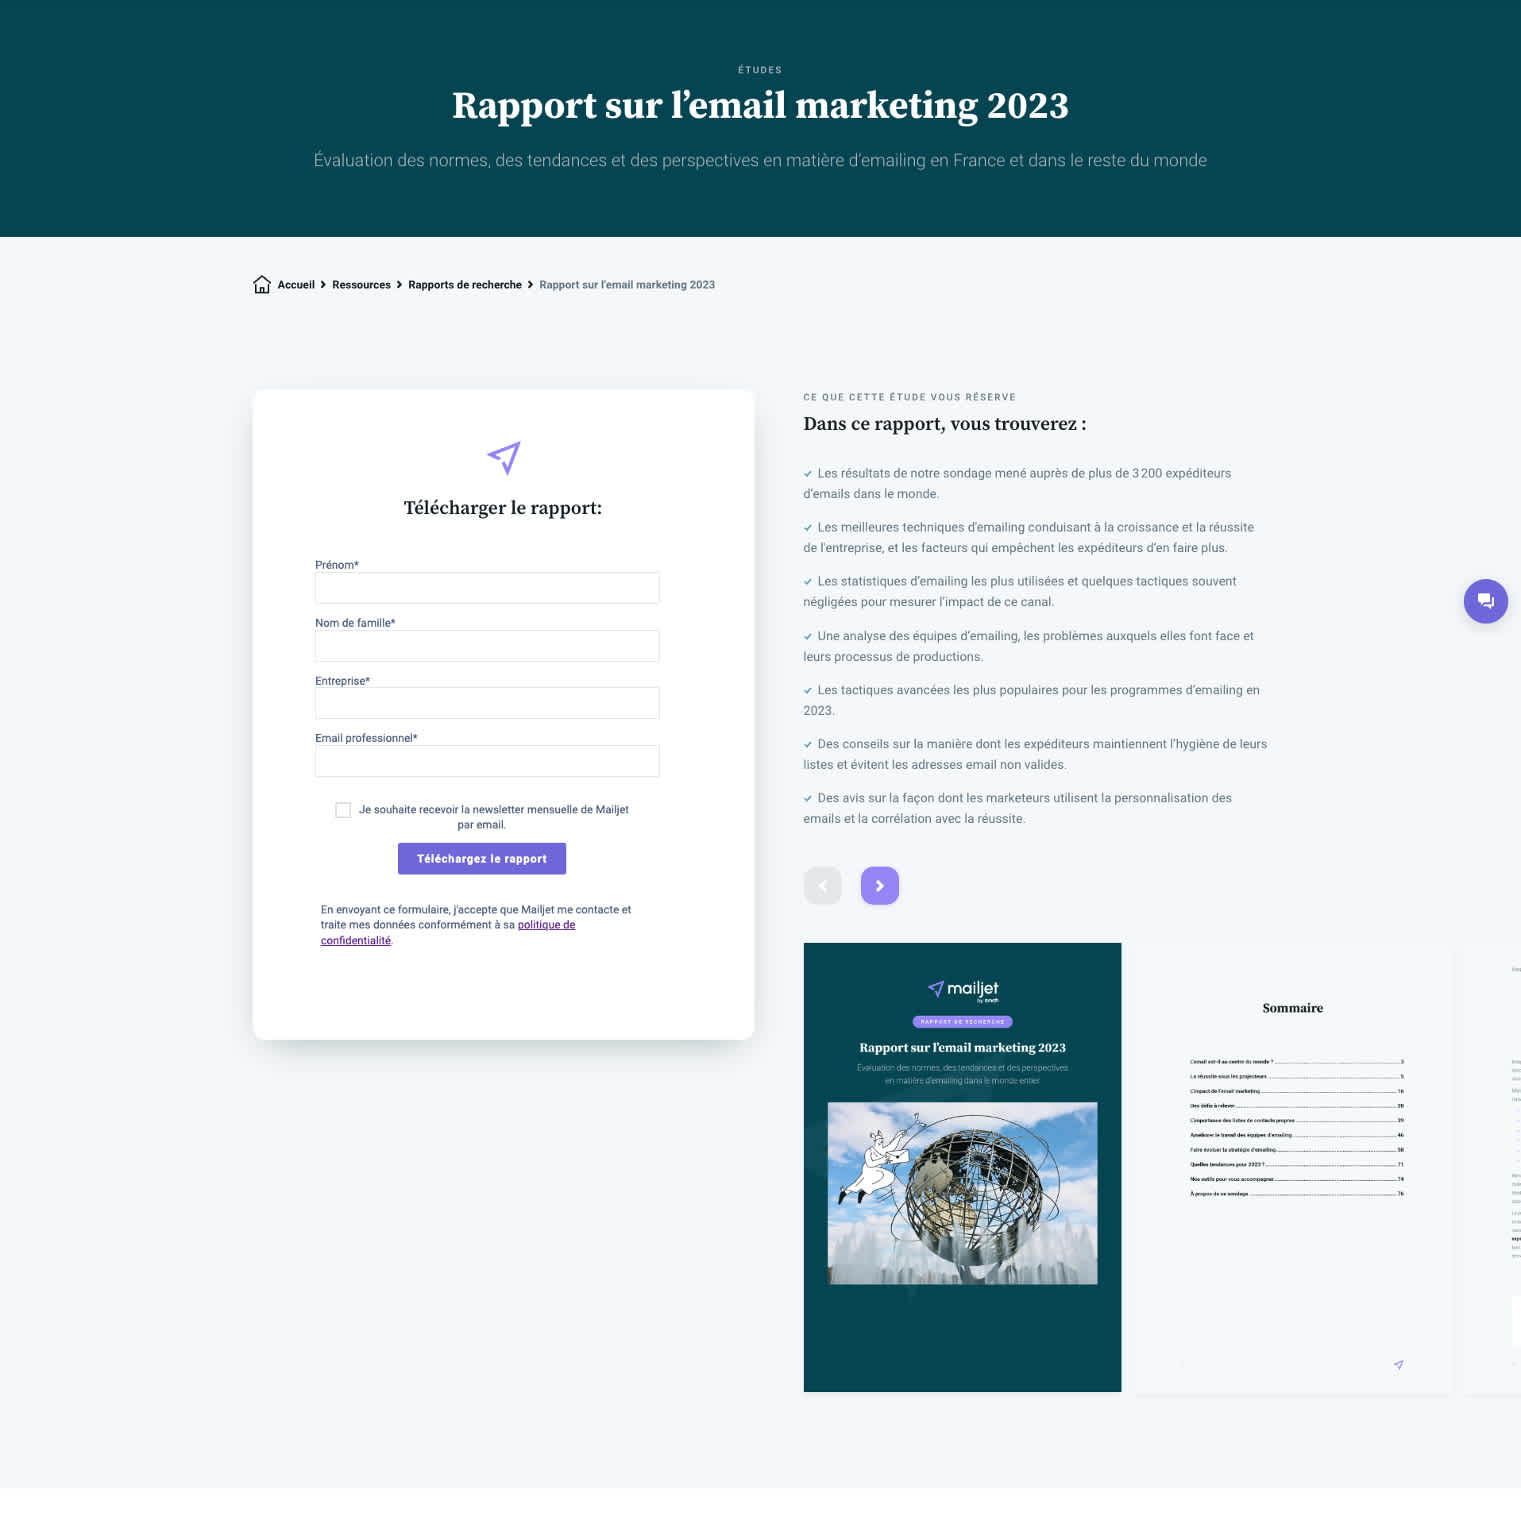 Capture d’écran de la page de téléchargement du Rapport sur l’email marketing 2023 de Mailjet